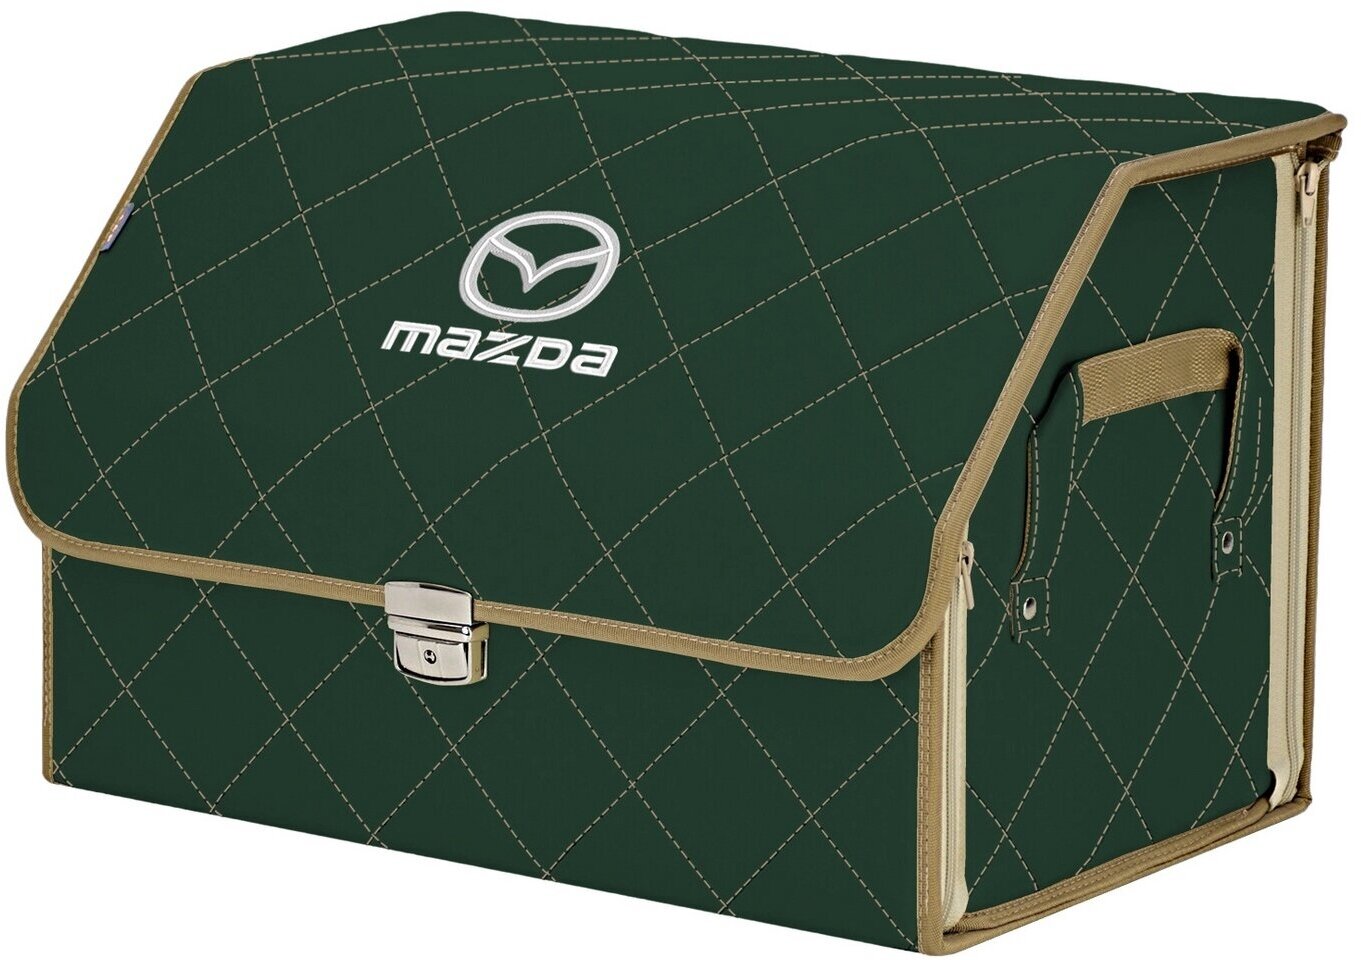 Органайзер-саквояж в багажник "Союз Премиум" (размер L). Цвет: зеленый с бежевой прострочкой Ромб и вышивкой Mazda (Мазда).